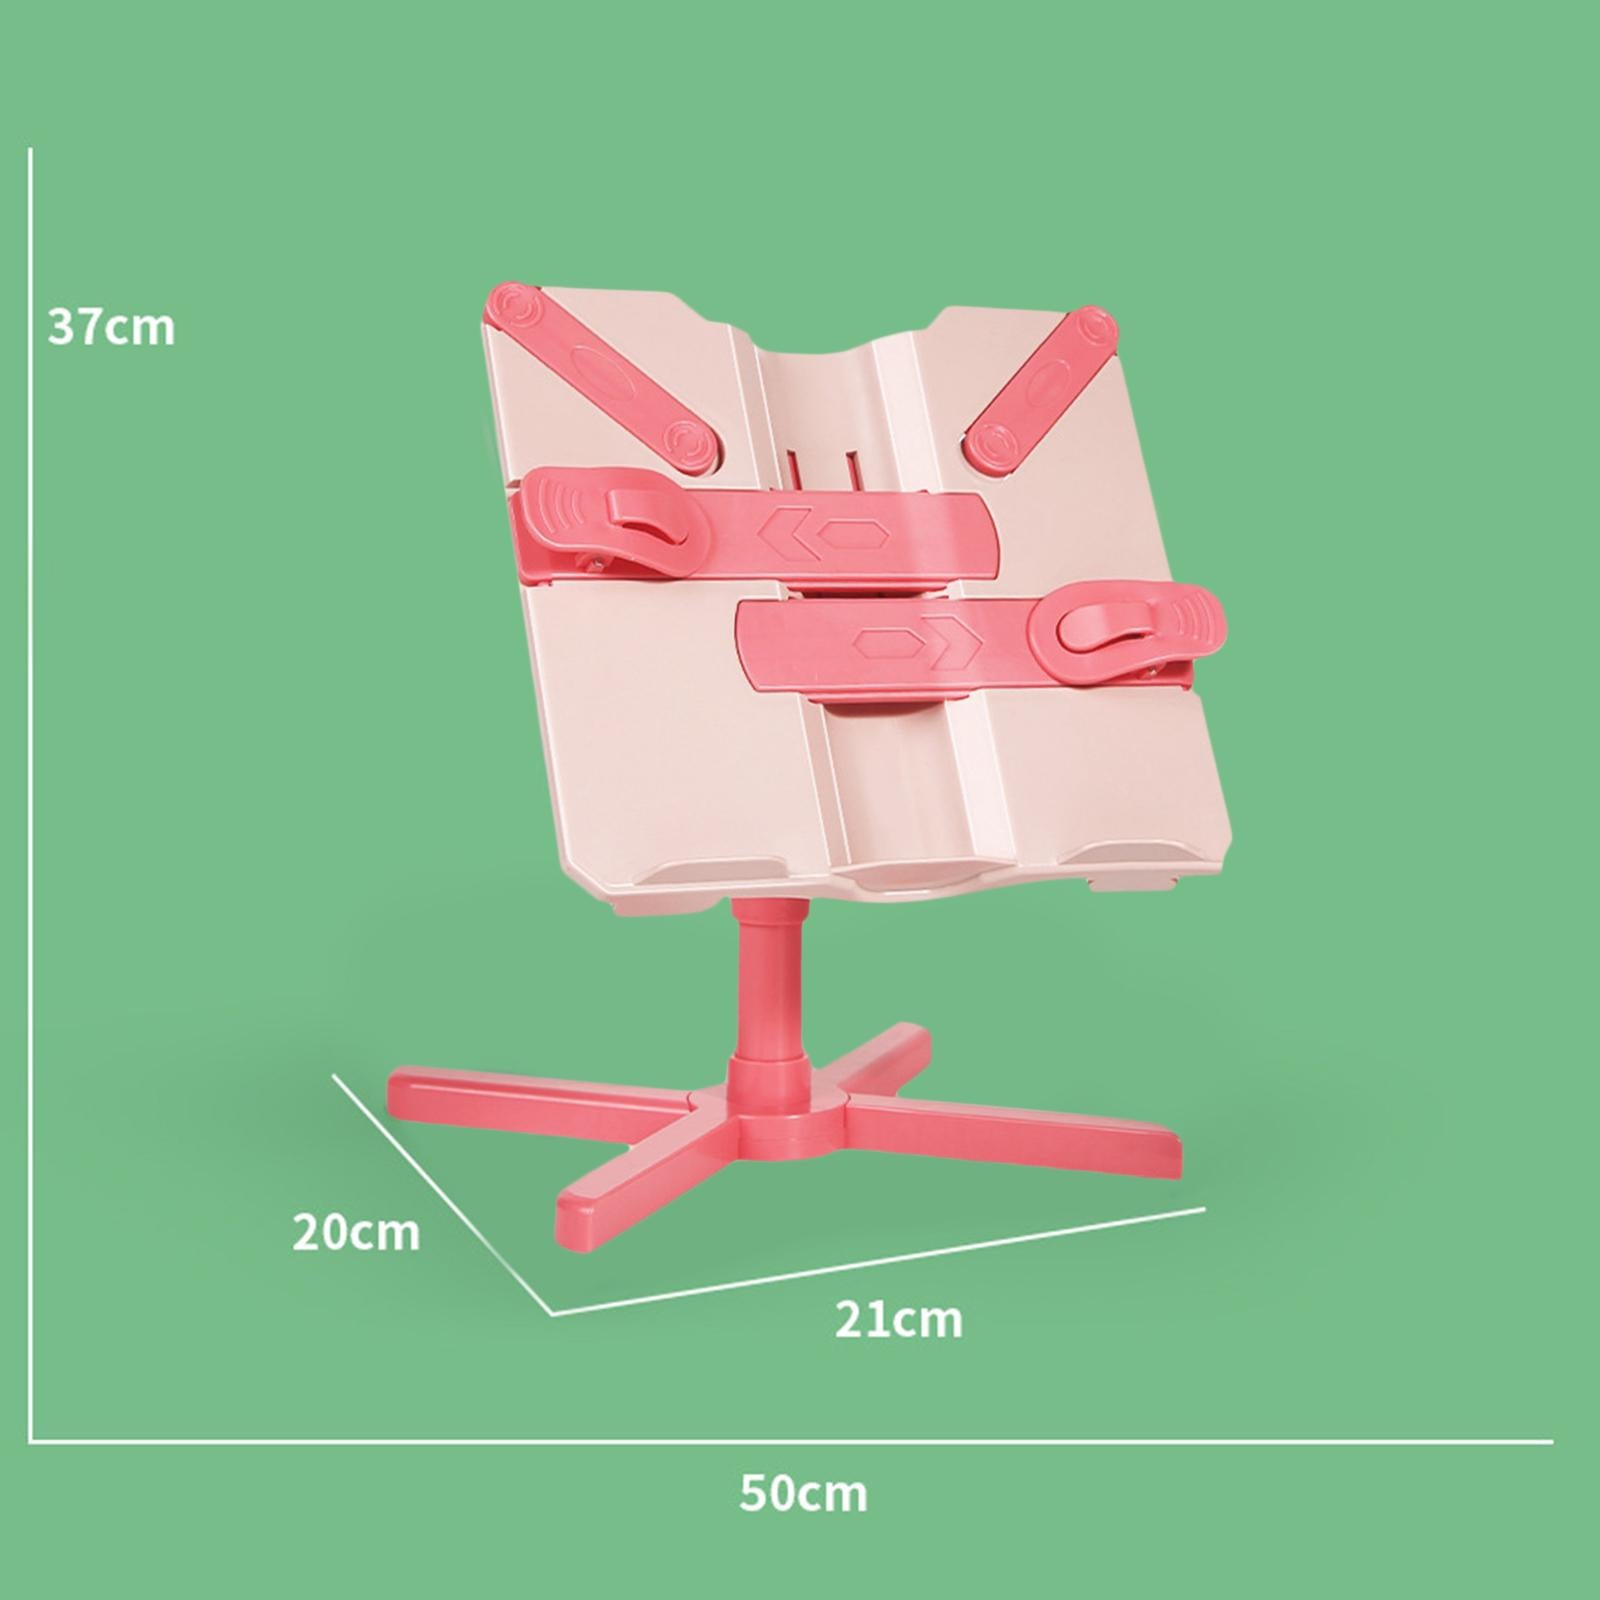 Book Holder Stand Portable Durable Tablet Holder for Kitchen Desktop Bedroom Pink